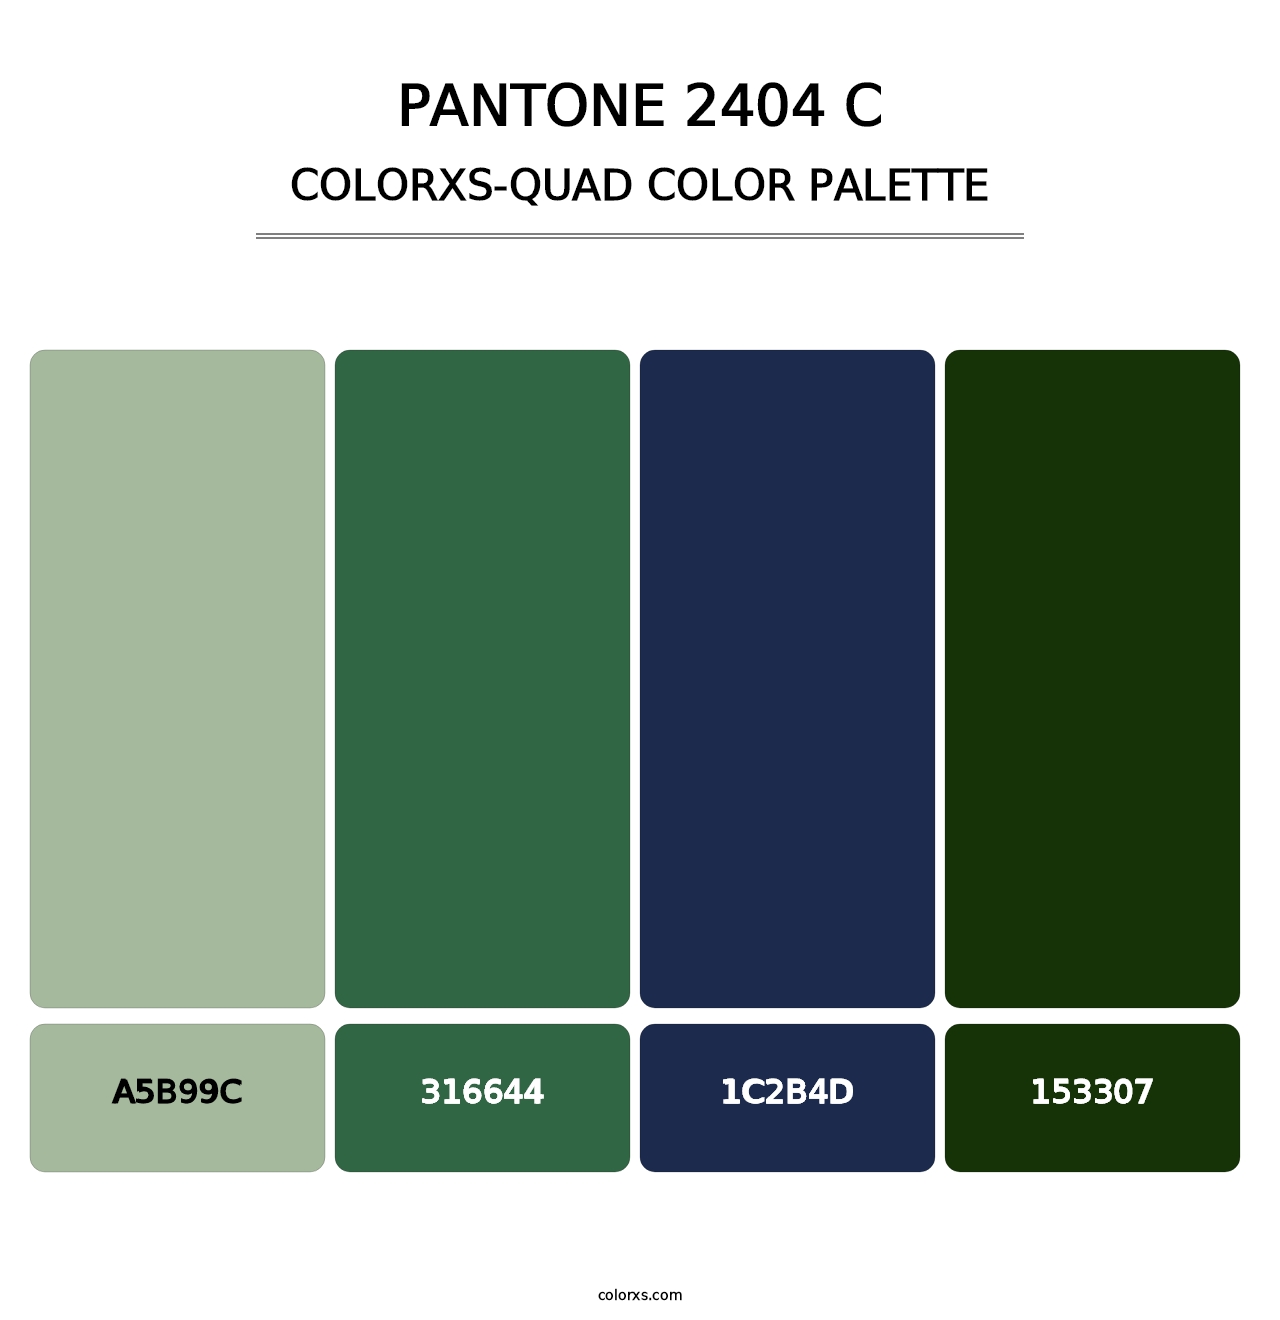 PANTONE 2404 C - Colorxs Quad Palette